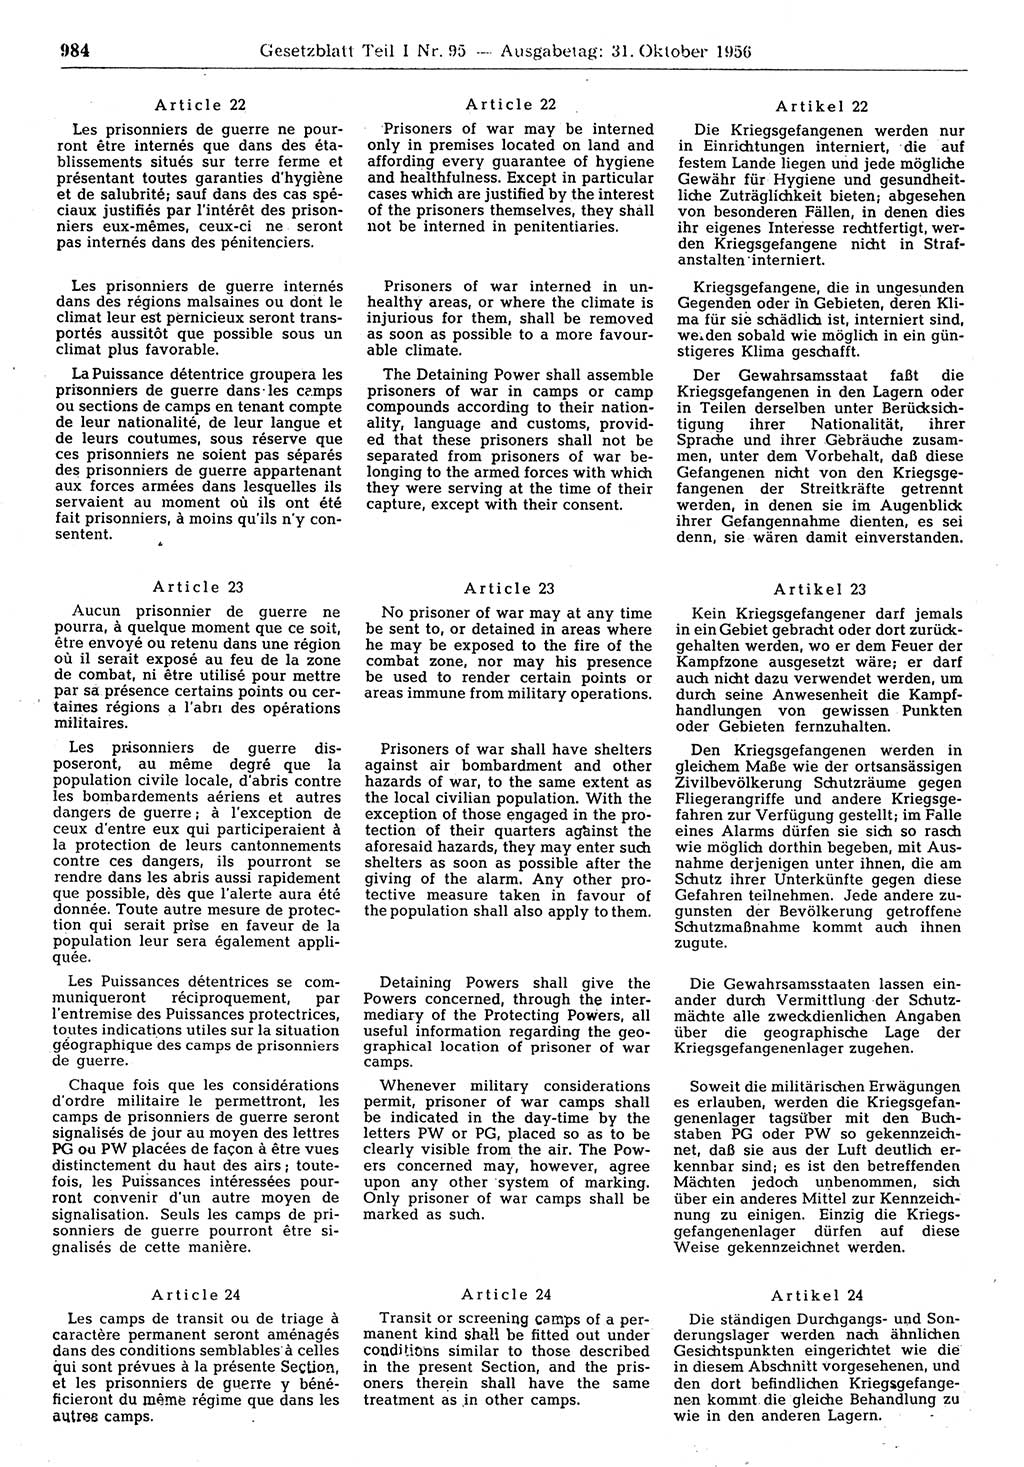 Gesetzblatt (GBl.) der Deutschen Demokratischen Republik (DDR) Teil Ⅰ 1956, Seite 984 (GBl. DDR Ⅰ 1956, S. 984)